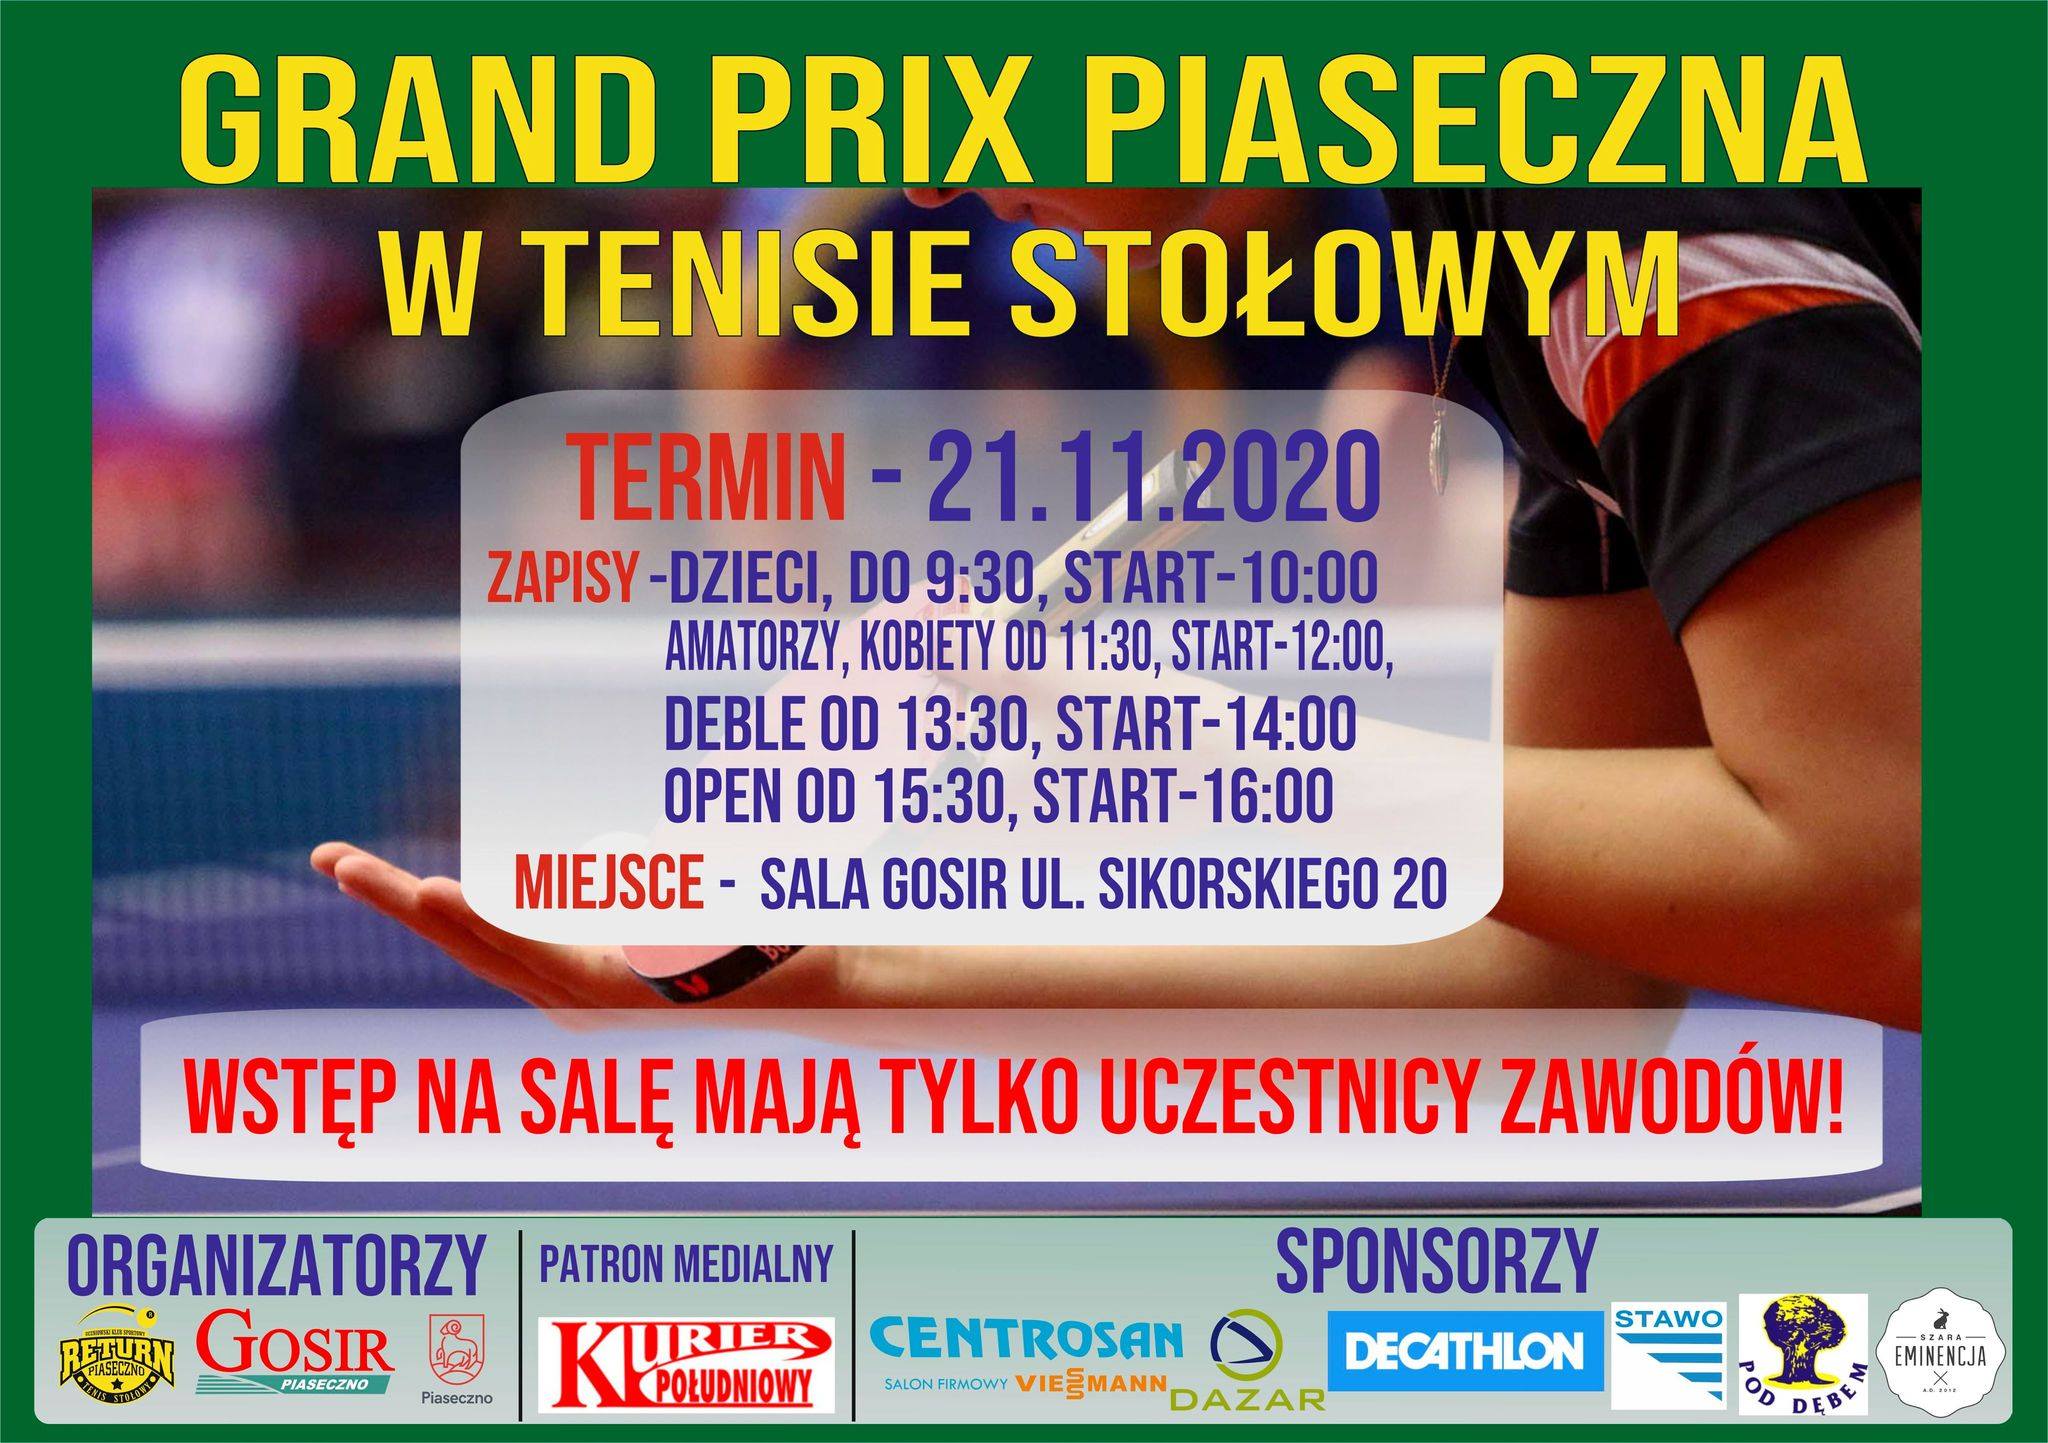 Plakat turnieju Grand Prix Piaseczna w tenisie stołowym 2019/2020 - IX Turniej